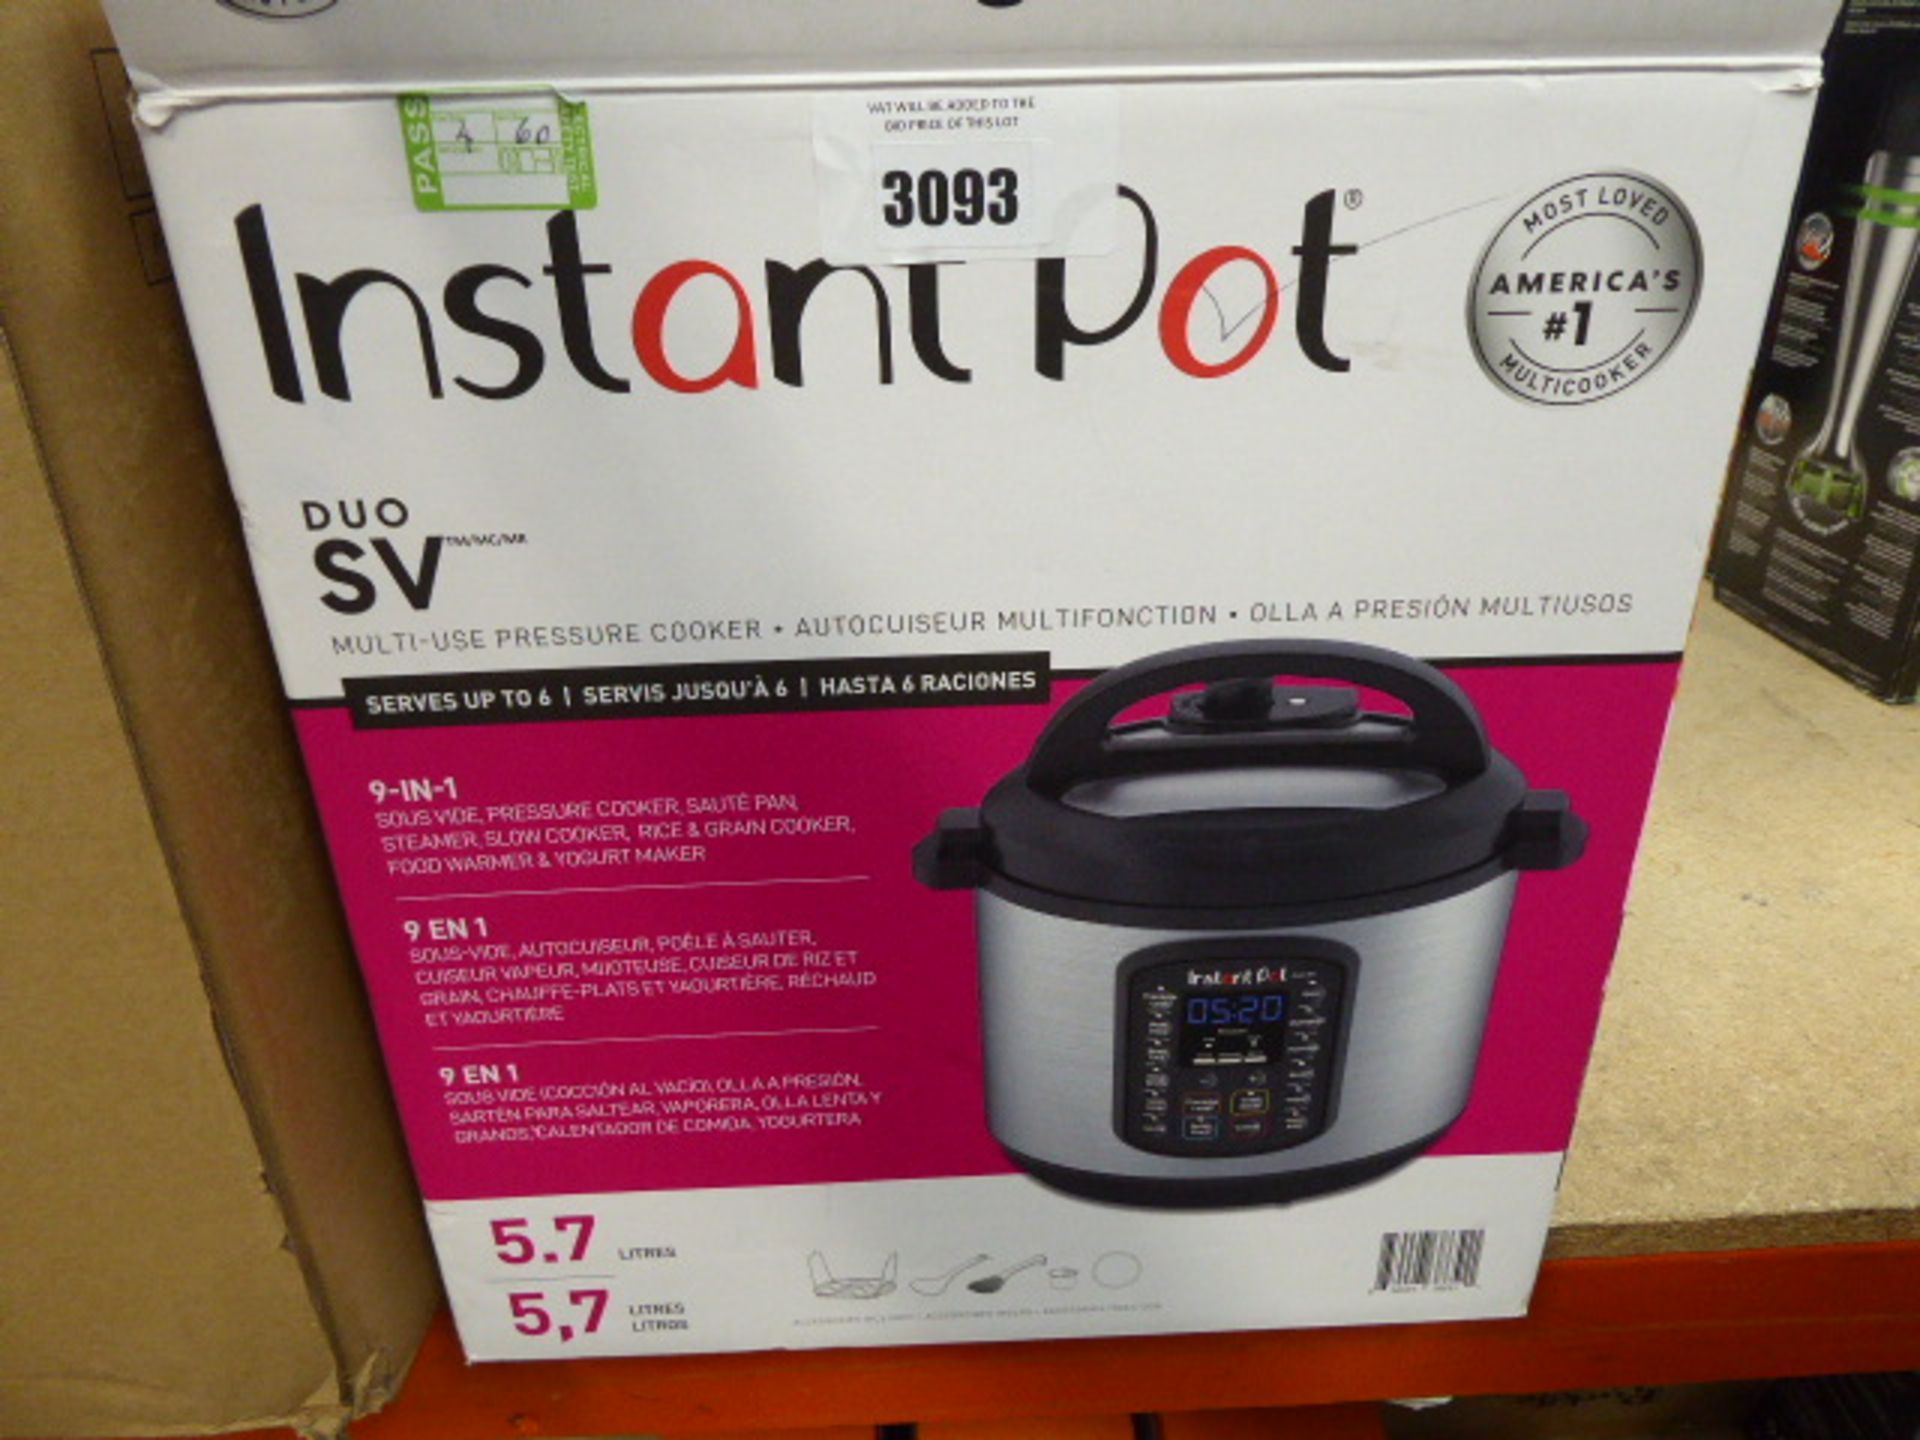 (TN60) Boxed Instant Pot multi use pressure cooker